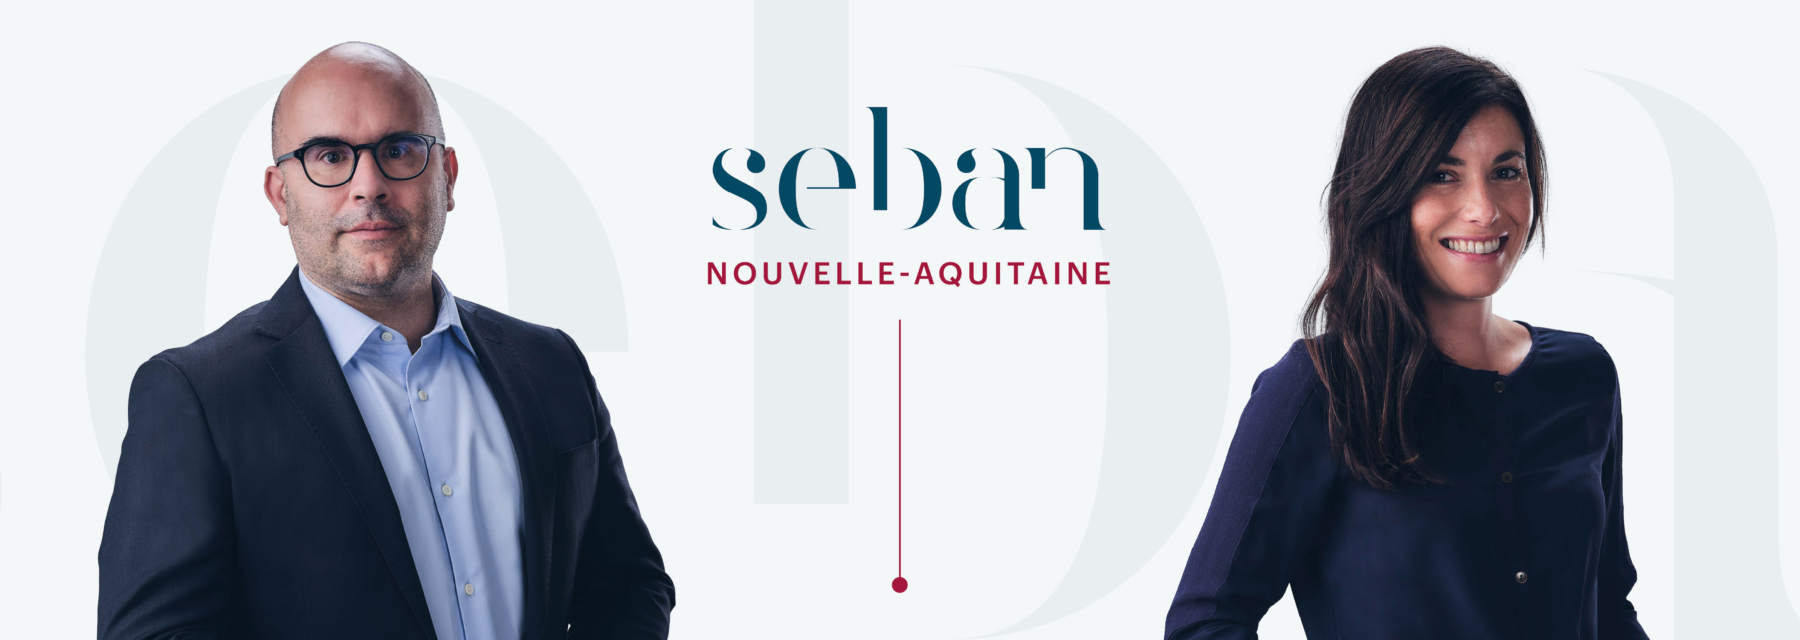 SEBAN NOUVELLE-AQUITAINE